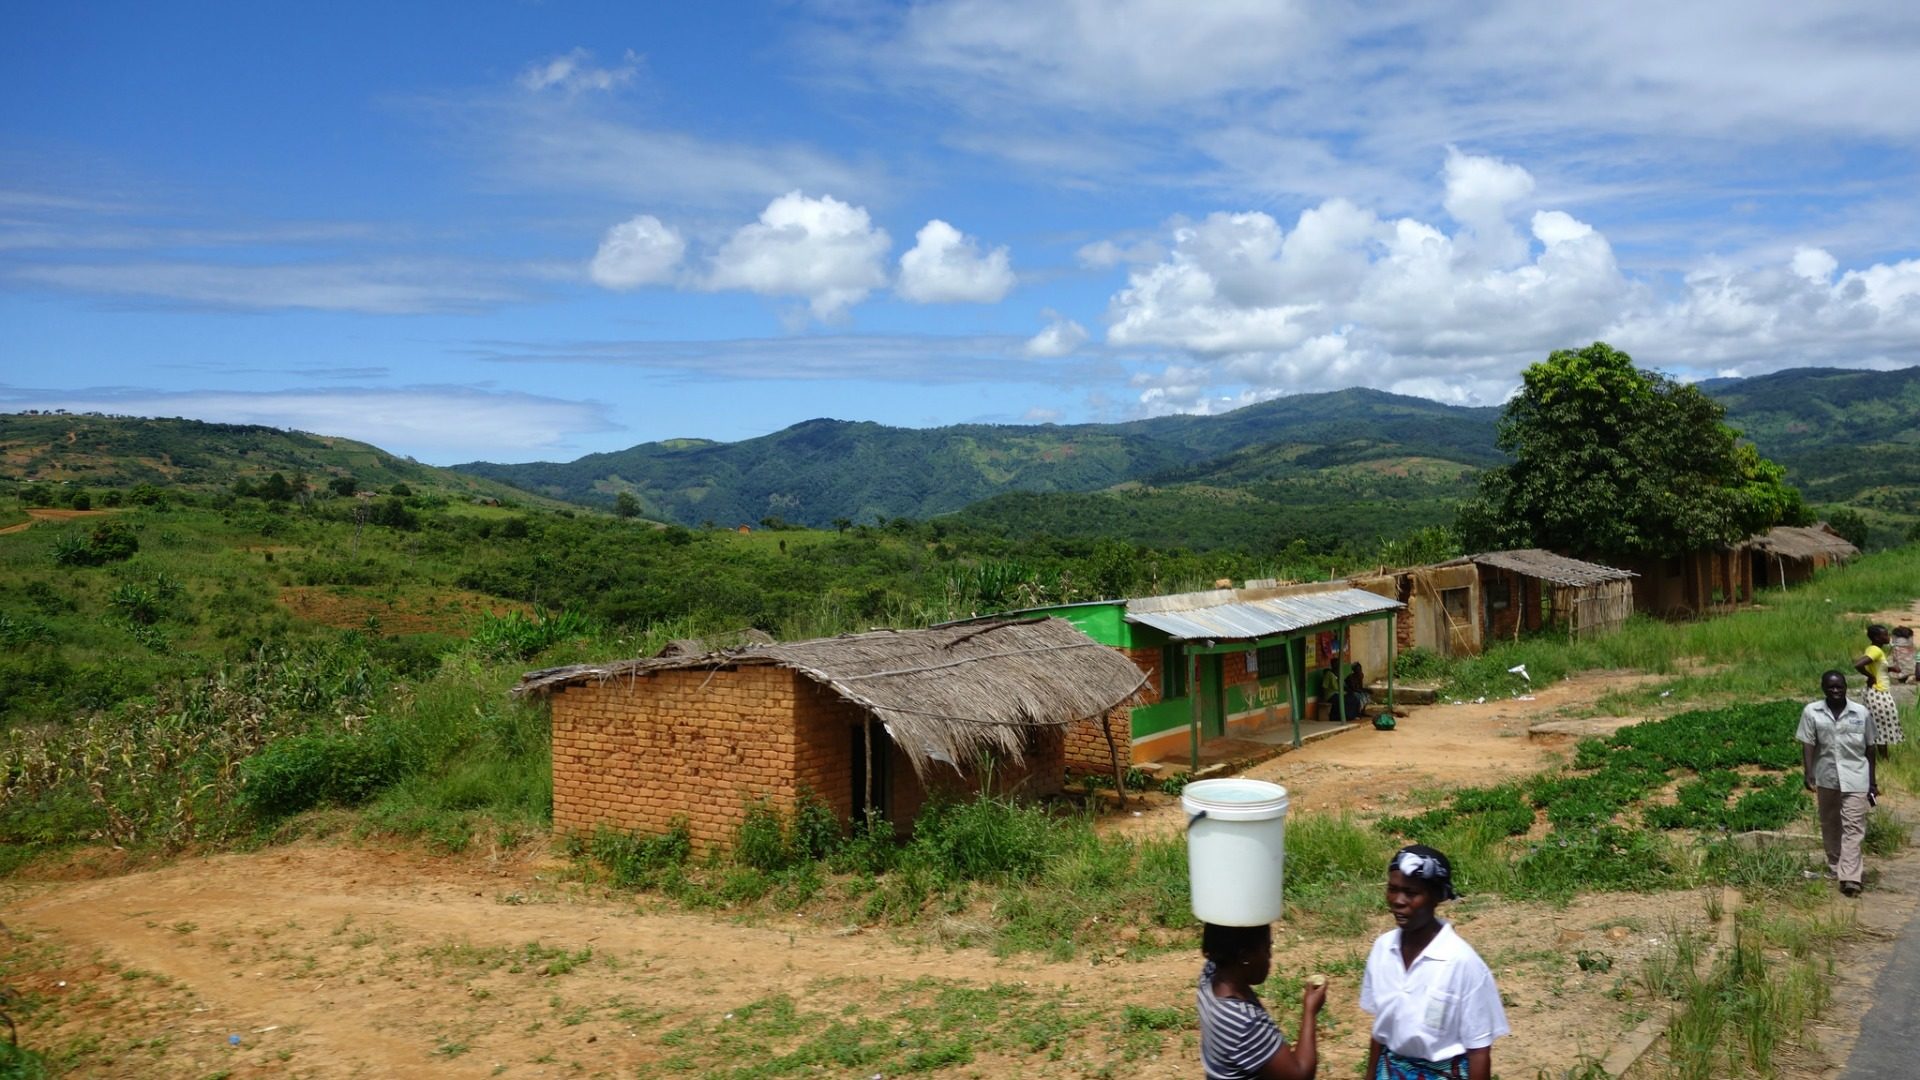 Le diocèse de Karonga, au Malawi, a reçu 10% de l'aide alimentaire offerte par le pape François. (Photo: Flickr/Davy Demaline/CC BY-NC-ND 2.0)